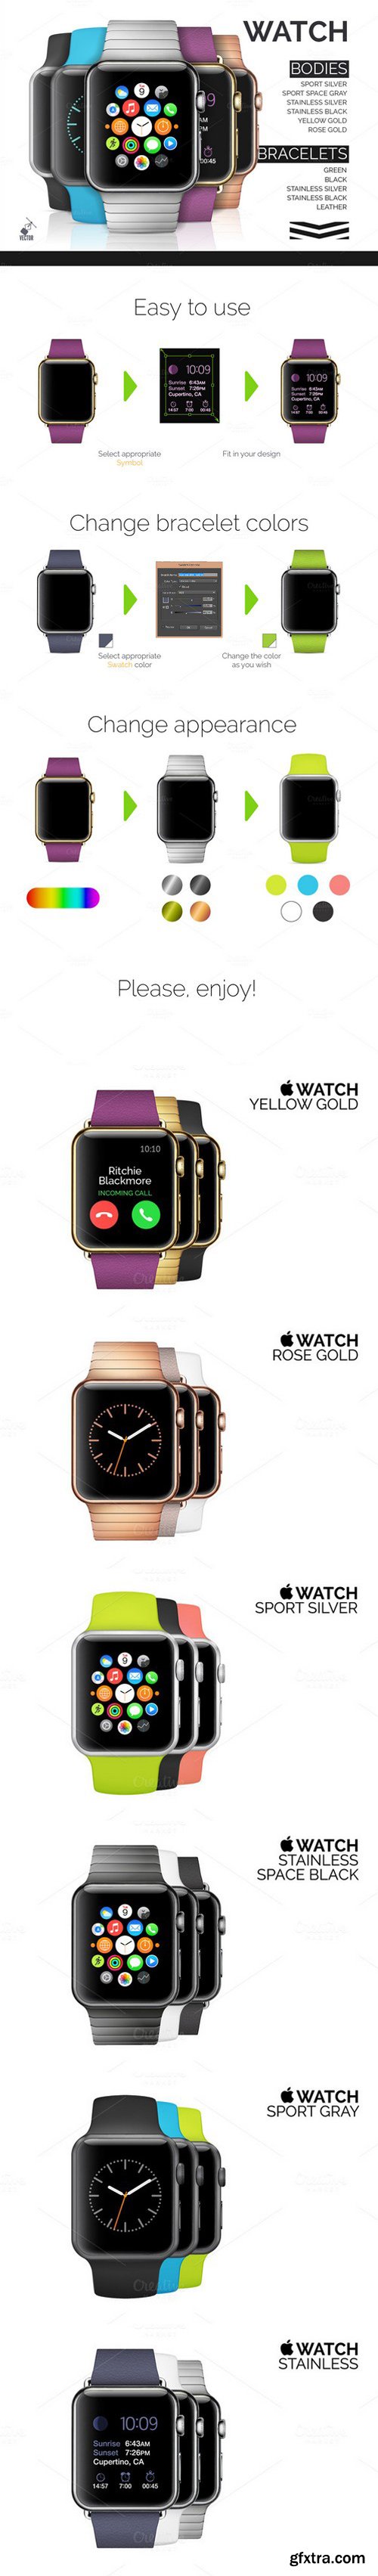 CM - Best vector Apple Watch mockups 516408